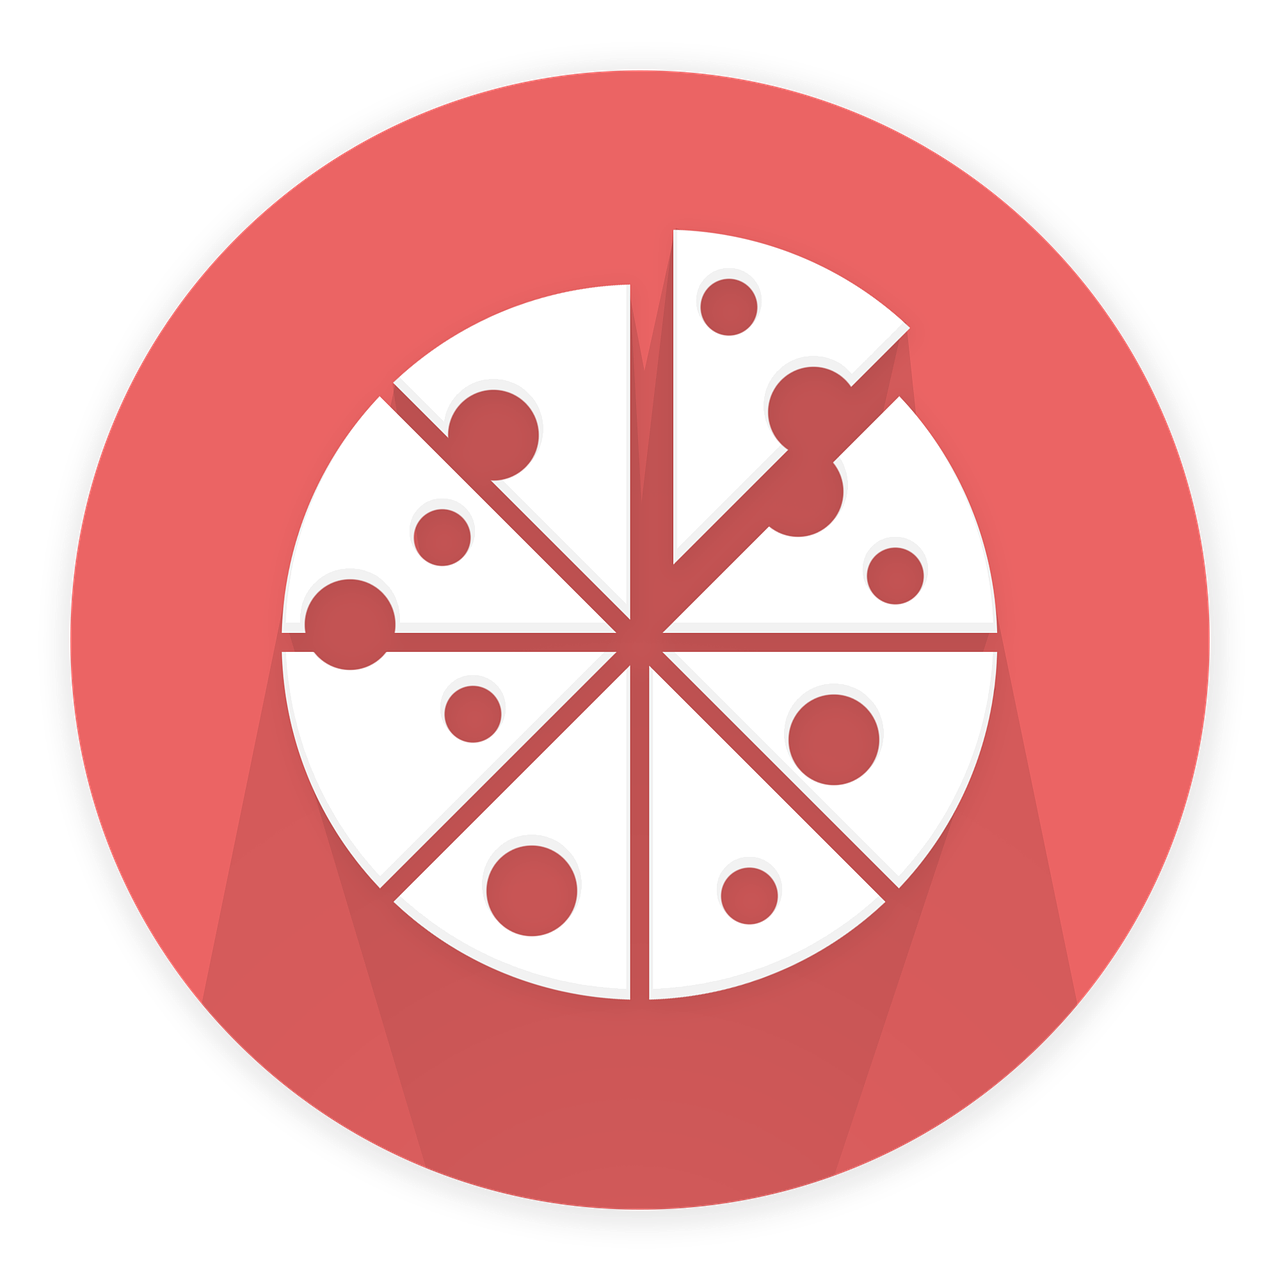 pizza pizza icon pizza slice free photo